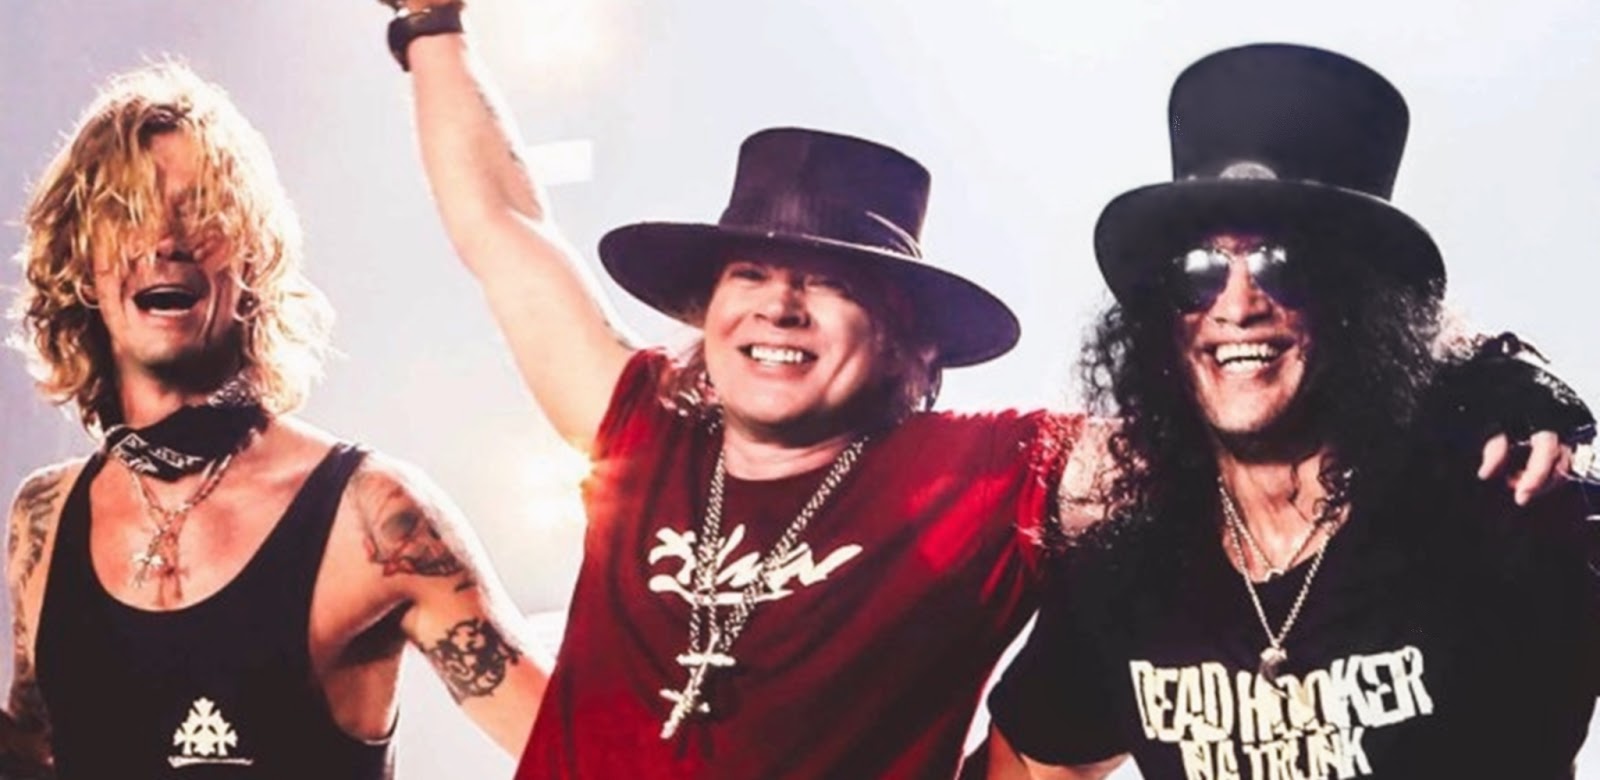 La ejecutiva discográfica Vicky Hamilton habla de Guns N 'Roses, Mötley Crüe. Su nuevo libro, sello y más. Duff%2Baxl%2Bslash